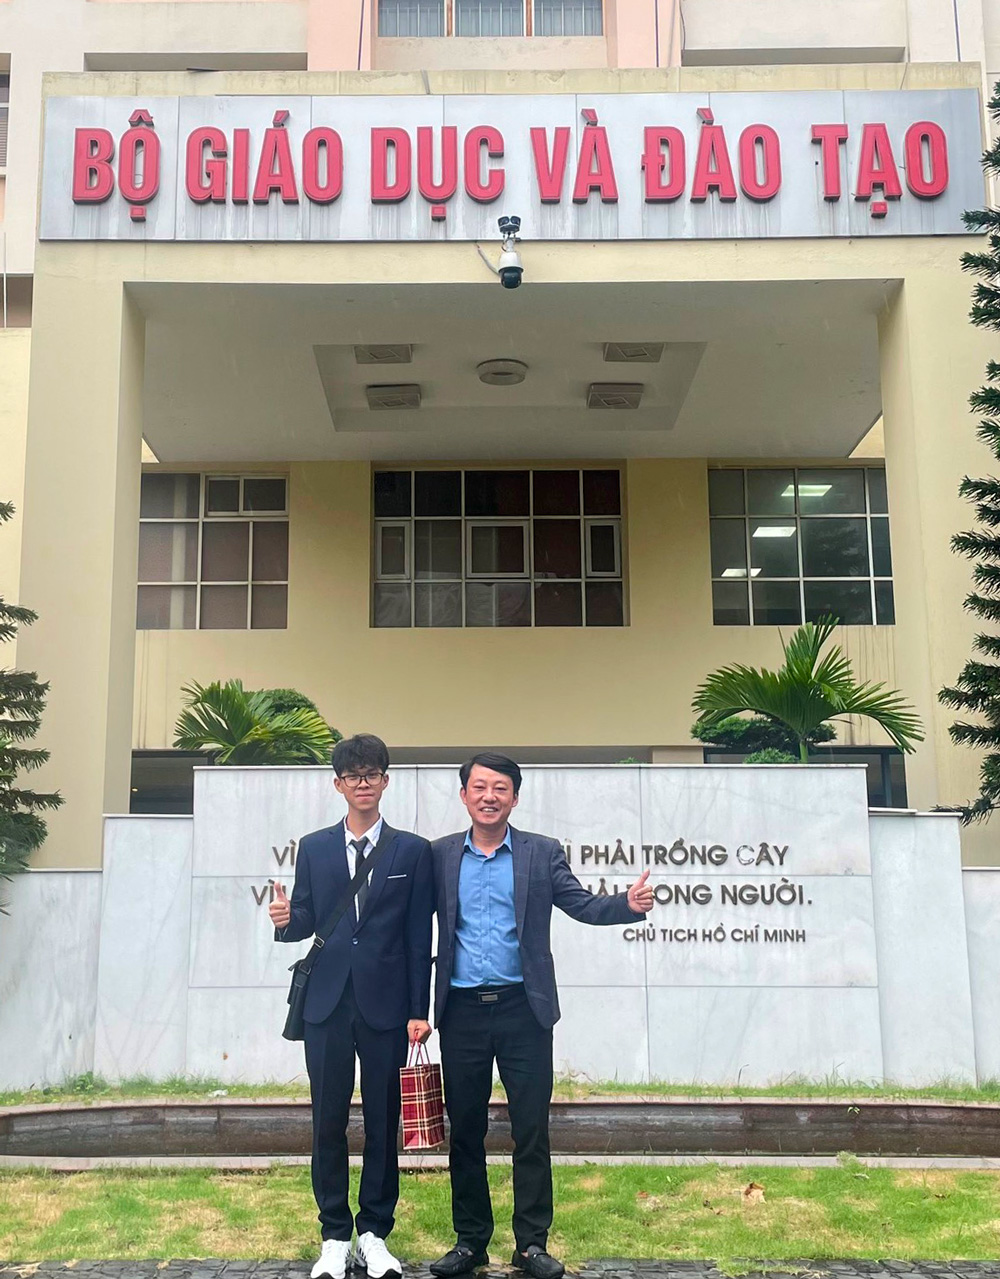 Thầy giáo Nguyễn Xuân Hùng (quan sát viên của đoàn Lâm Đồng) và em Lê Hoàng Trường Giang trước giờ lên đường sang Mỹ tham dự cuộc thi